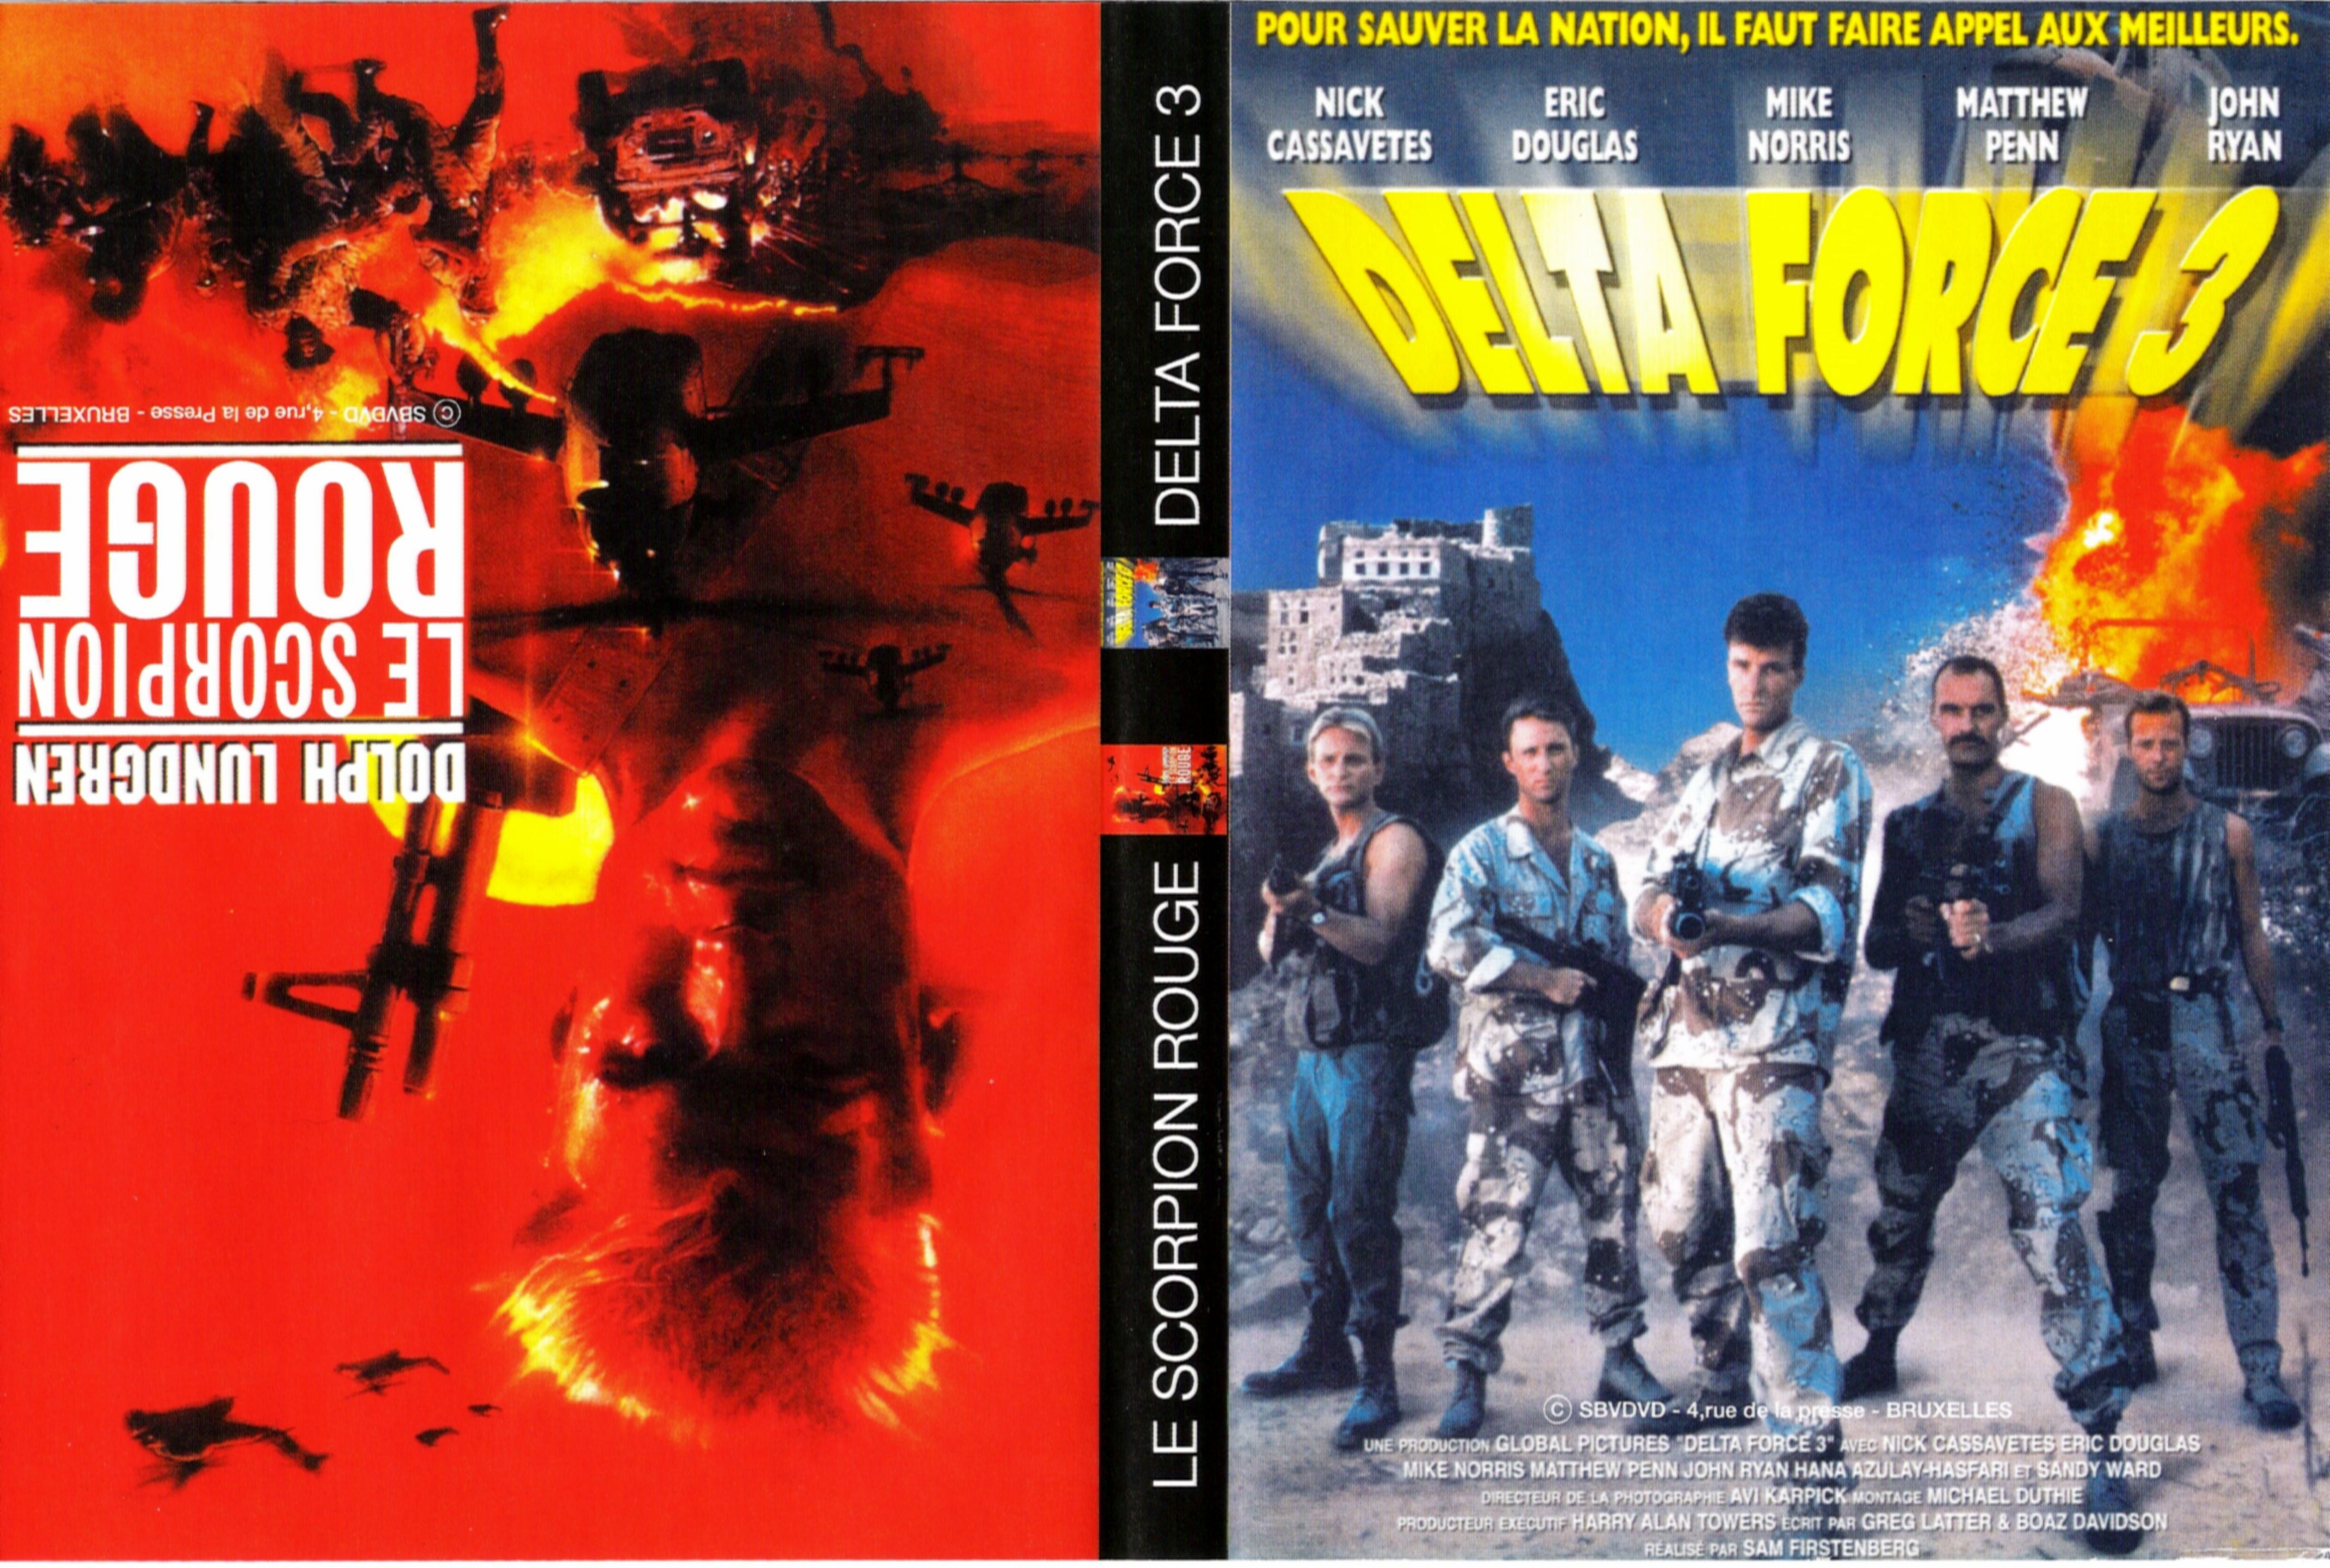 Jaquette DVD Delta force 3 - Le scorpion rouge